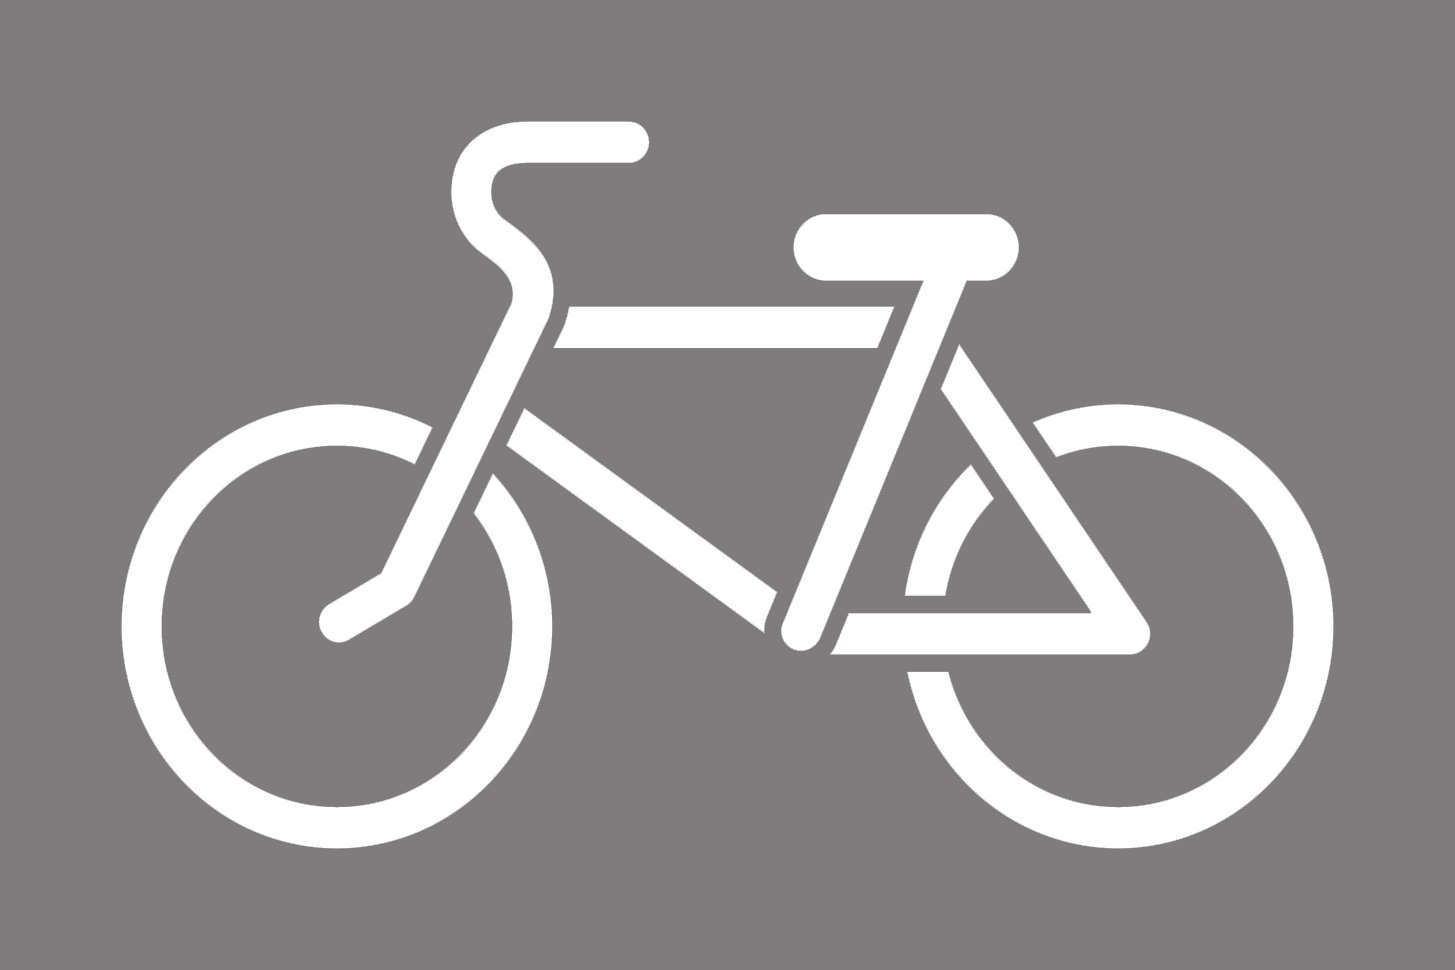 1 24 2017. Разметка 1.23.3 велосипедная дорожка. Трафарет дорожной разметки 1.24.1. Трафарет велосипедная дорожка. Разметка велосипедной дорожки.